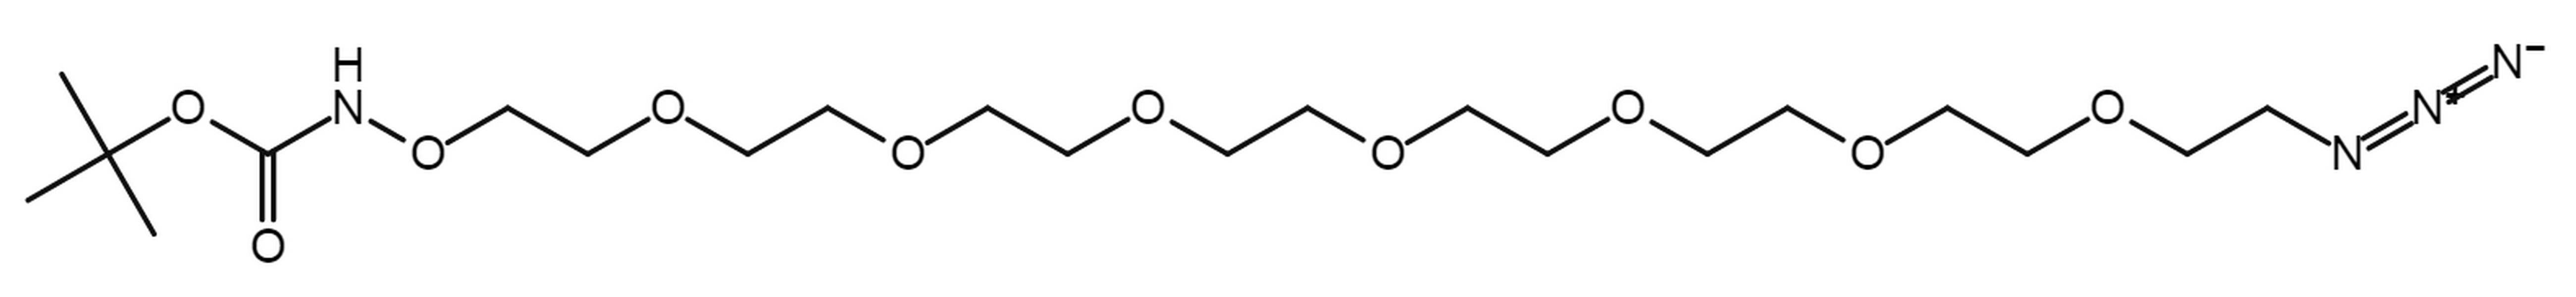 t-Boc-Aminooxy-PEG7-azide